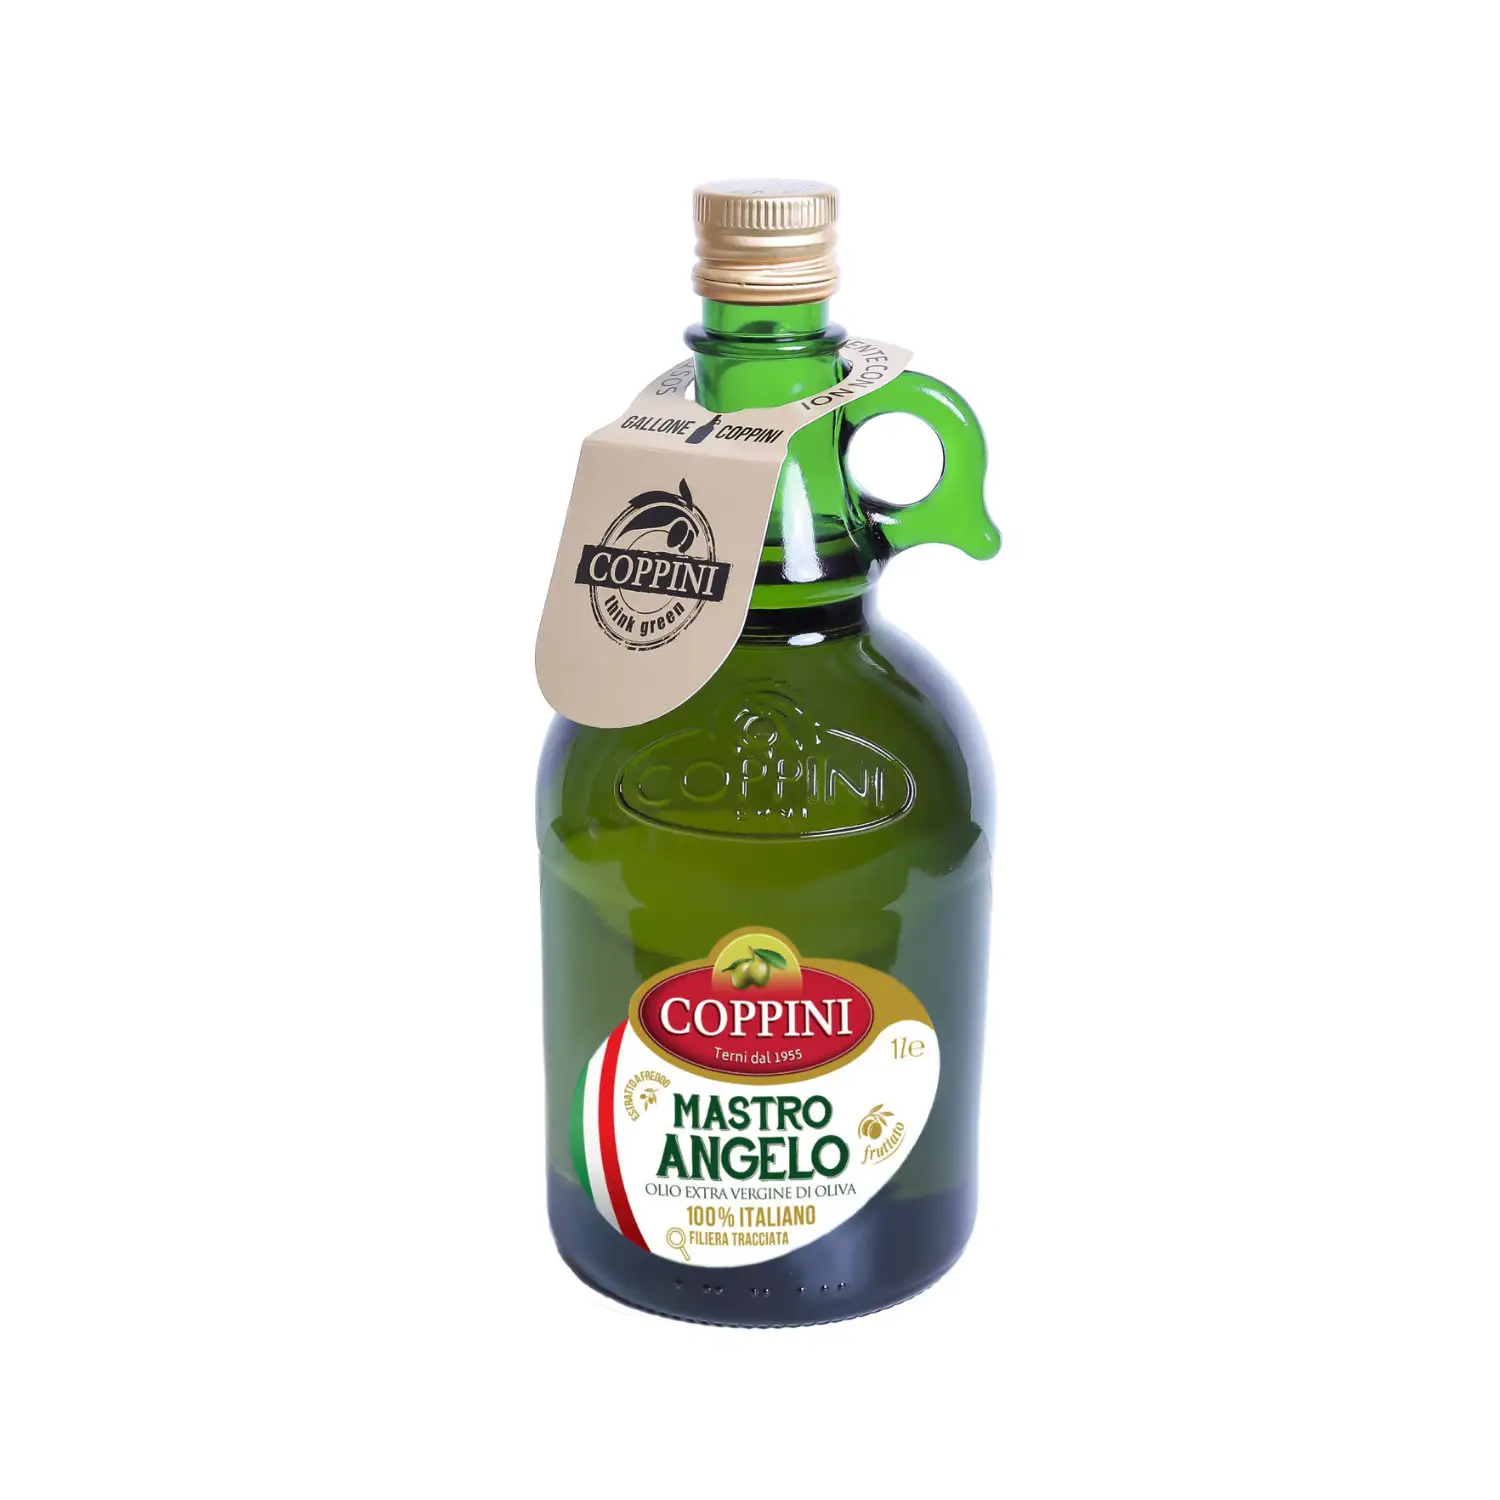 Бестселлер, итальянское оливковое масло Coppini-1 л стакан фруктового экстравиргина-юношеское чутье для ваших блюд